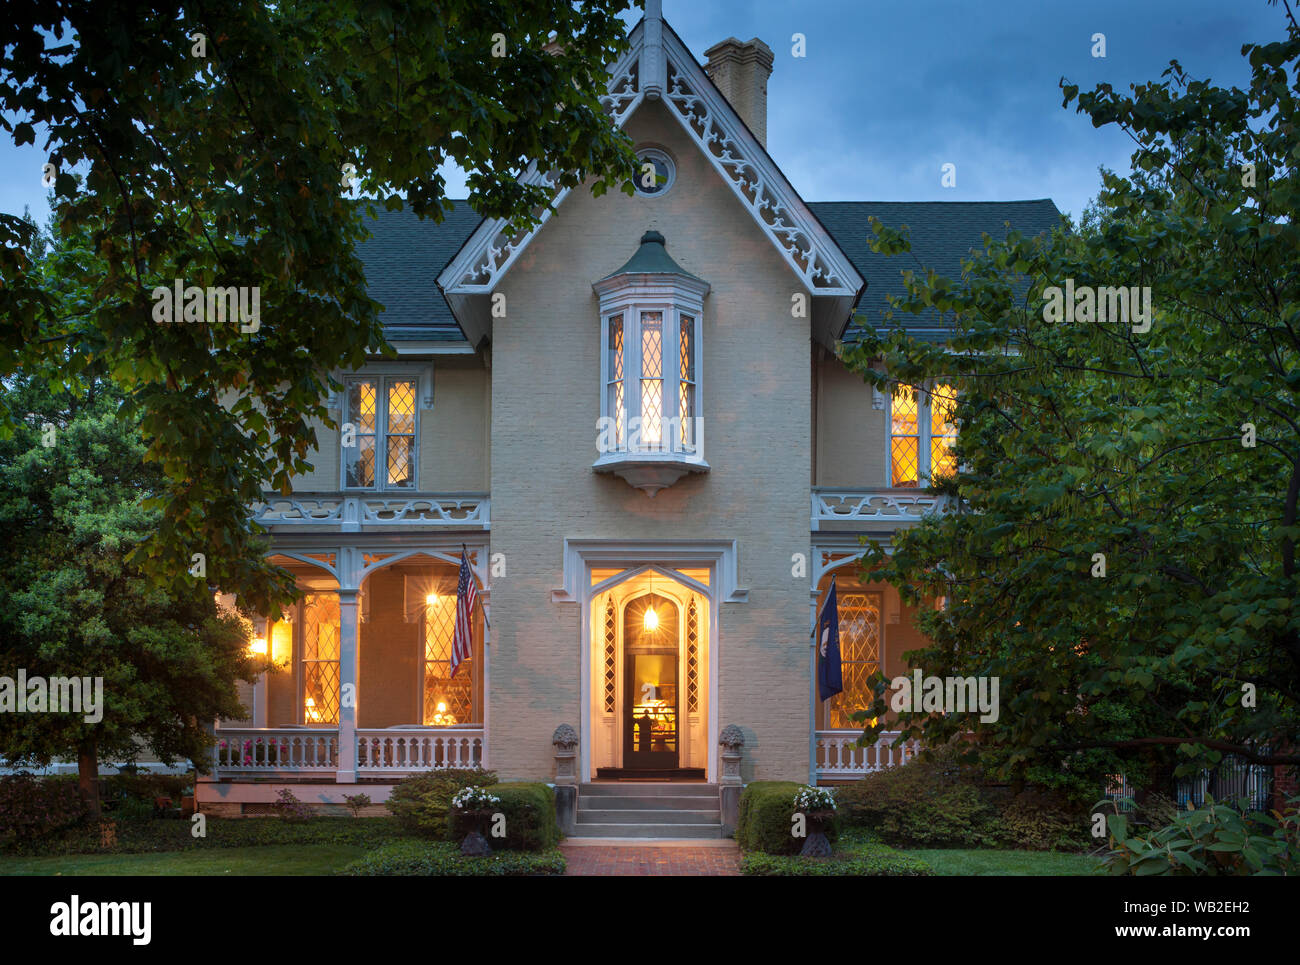 La facciata della casa con bandiere e giardino in estate di notte, American Gothic Revival Stile, Inn at Woodhaven, Louisville, Kentucky, Stati Uniti d'America Foto Stock